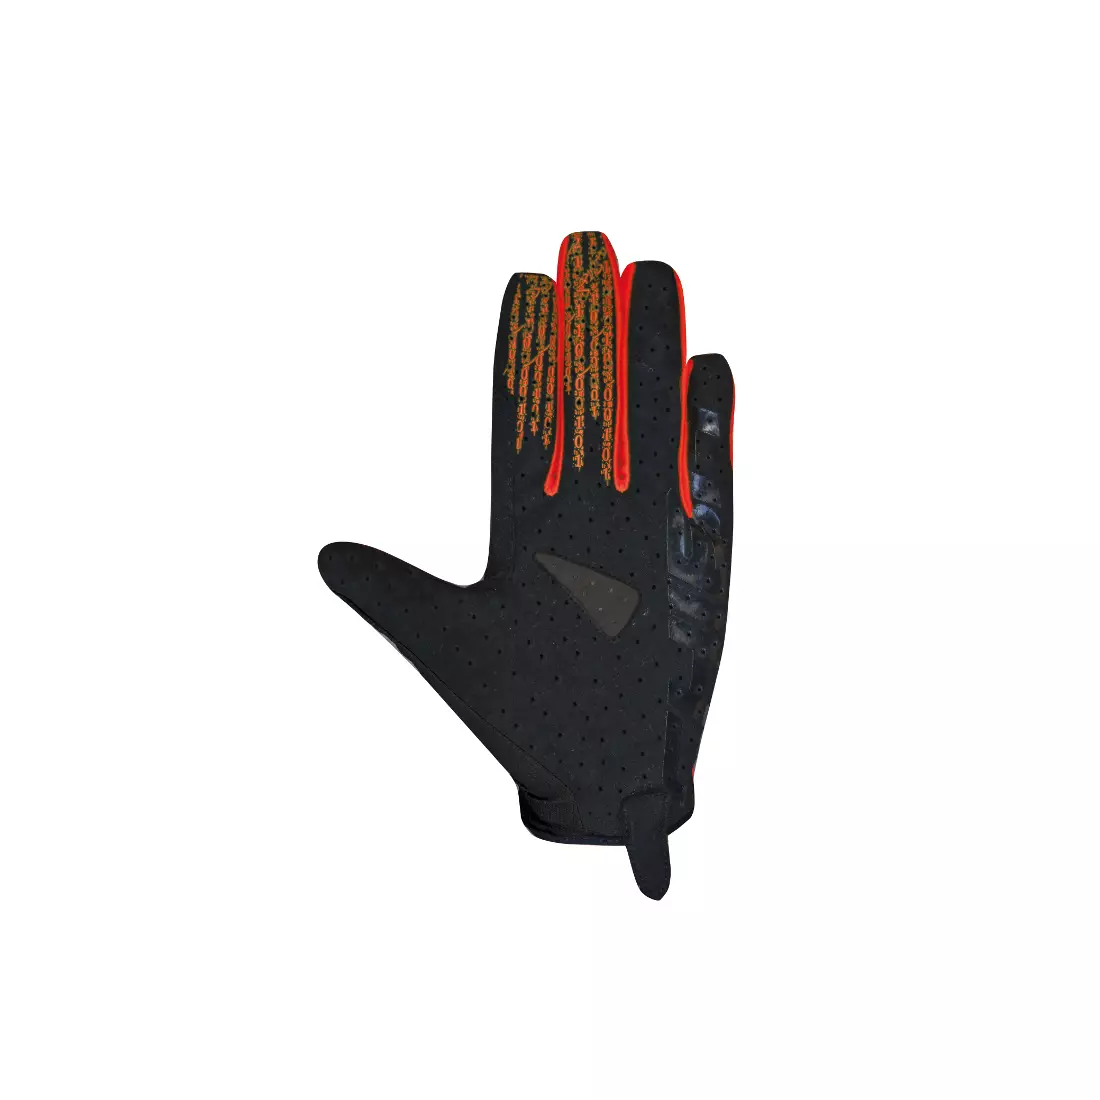 CHIBA TITAN letné cyklistické rukavice s dlhými prstami, čierne červené 30786